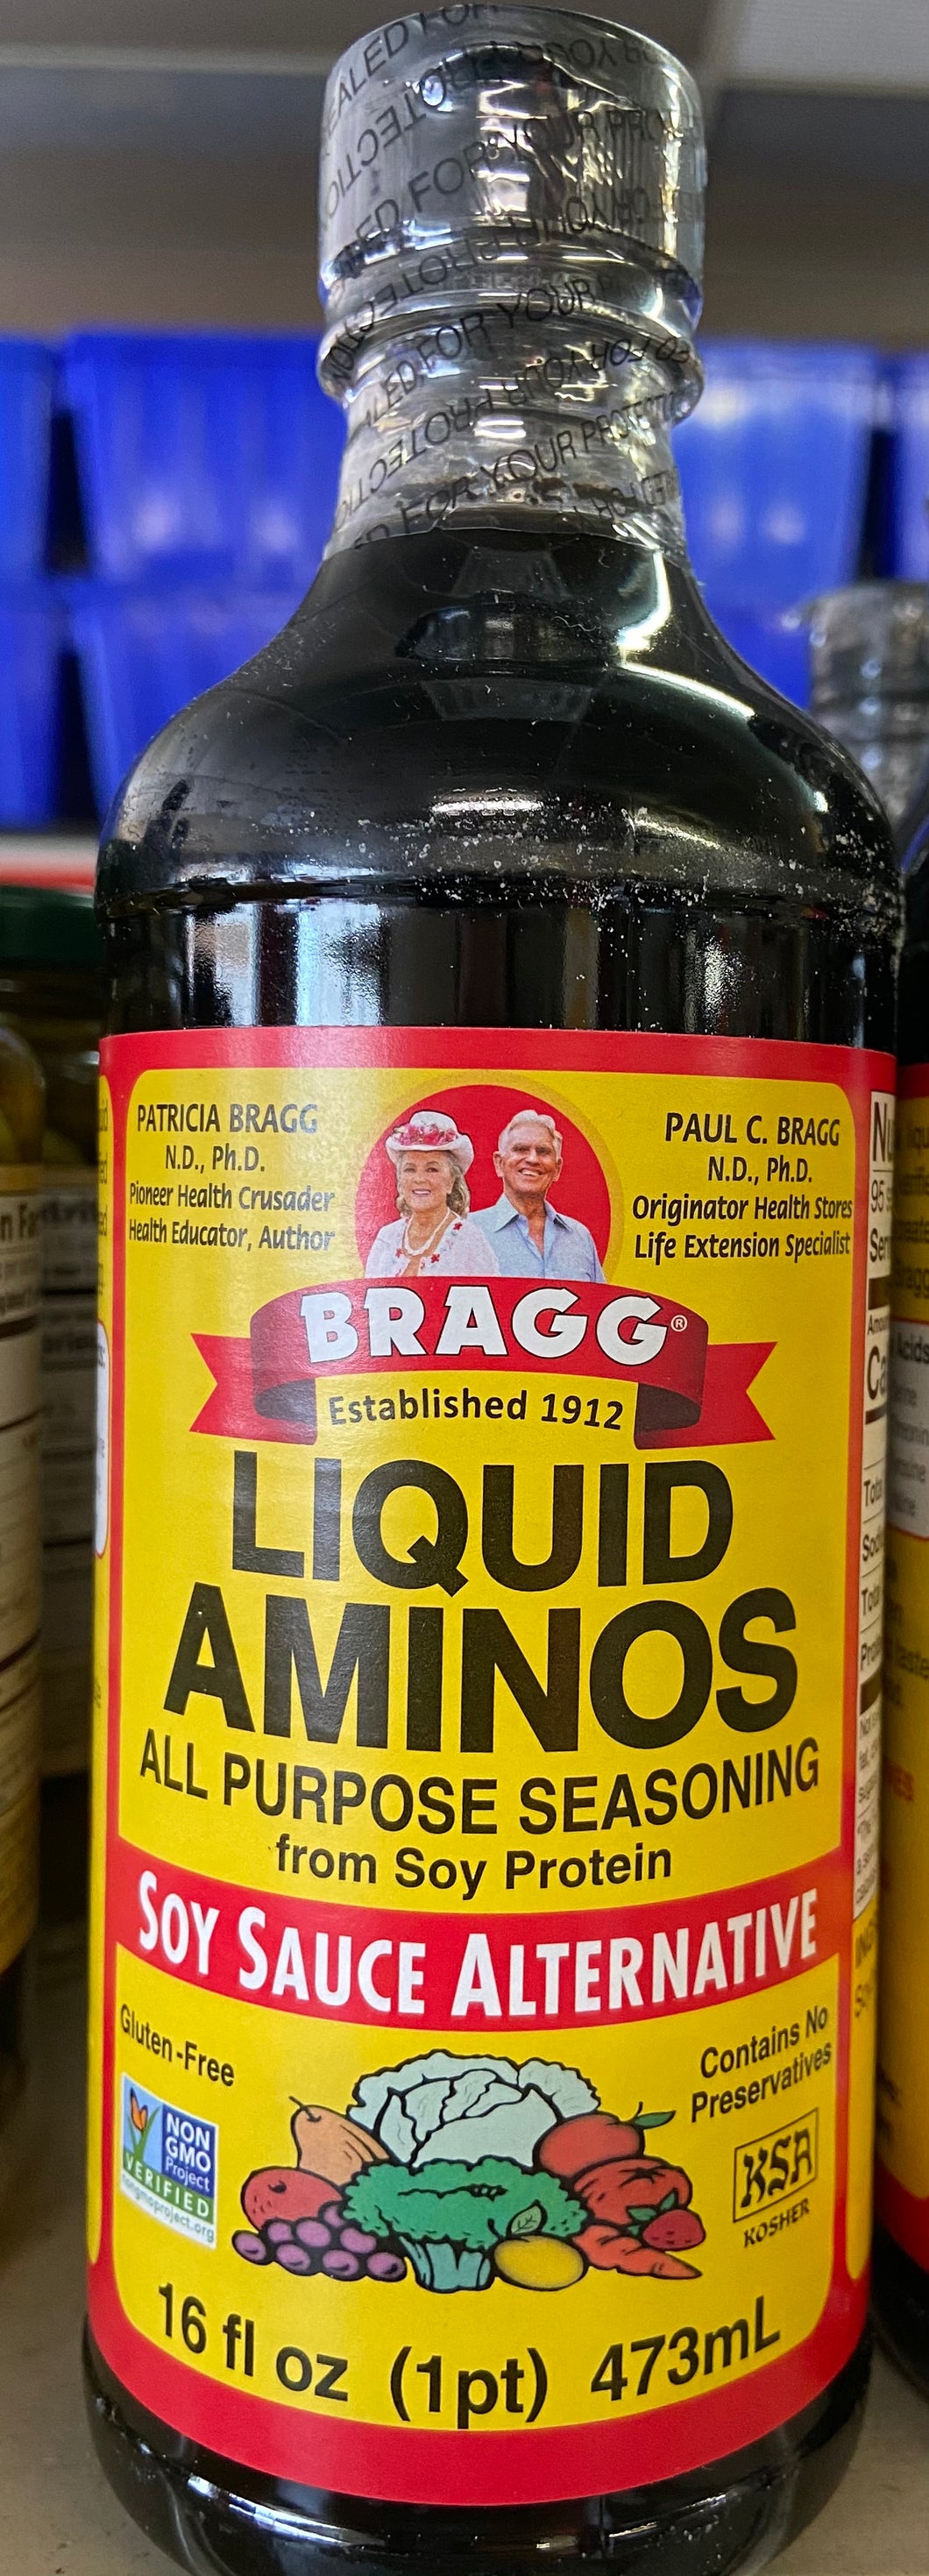 Liquid Aminos, Bragg, Soy Sauce Alternative